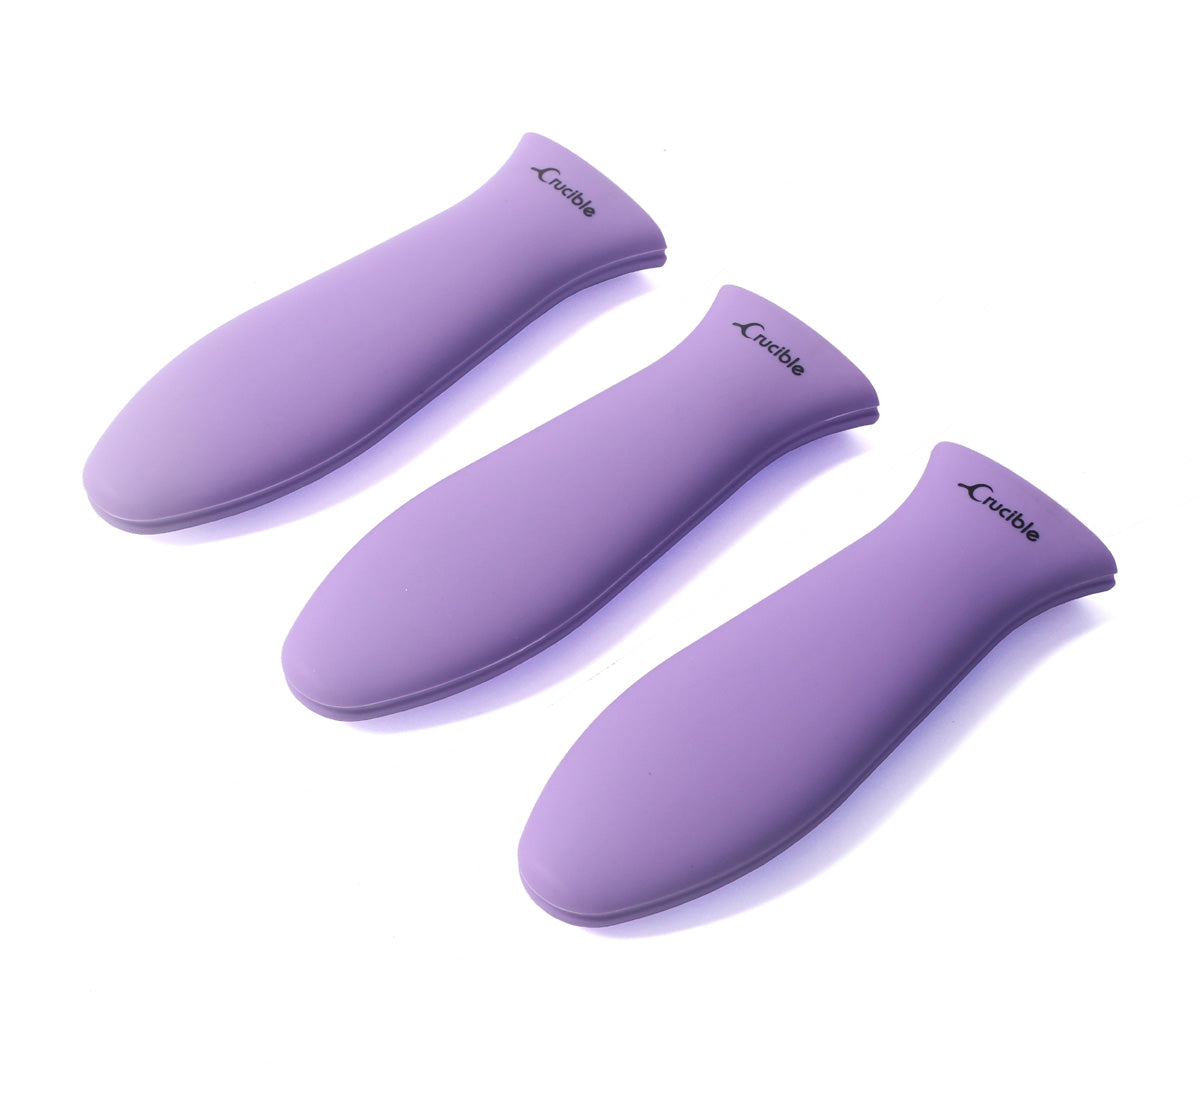 Силиконовый держатель для горячей ручки, прихватка (фиолетовая большая), рукоятка, крышка ручки